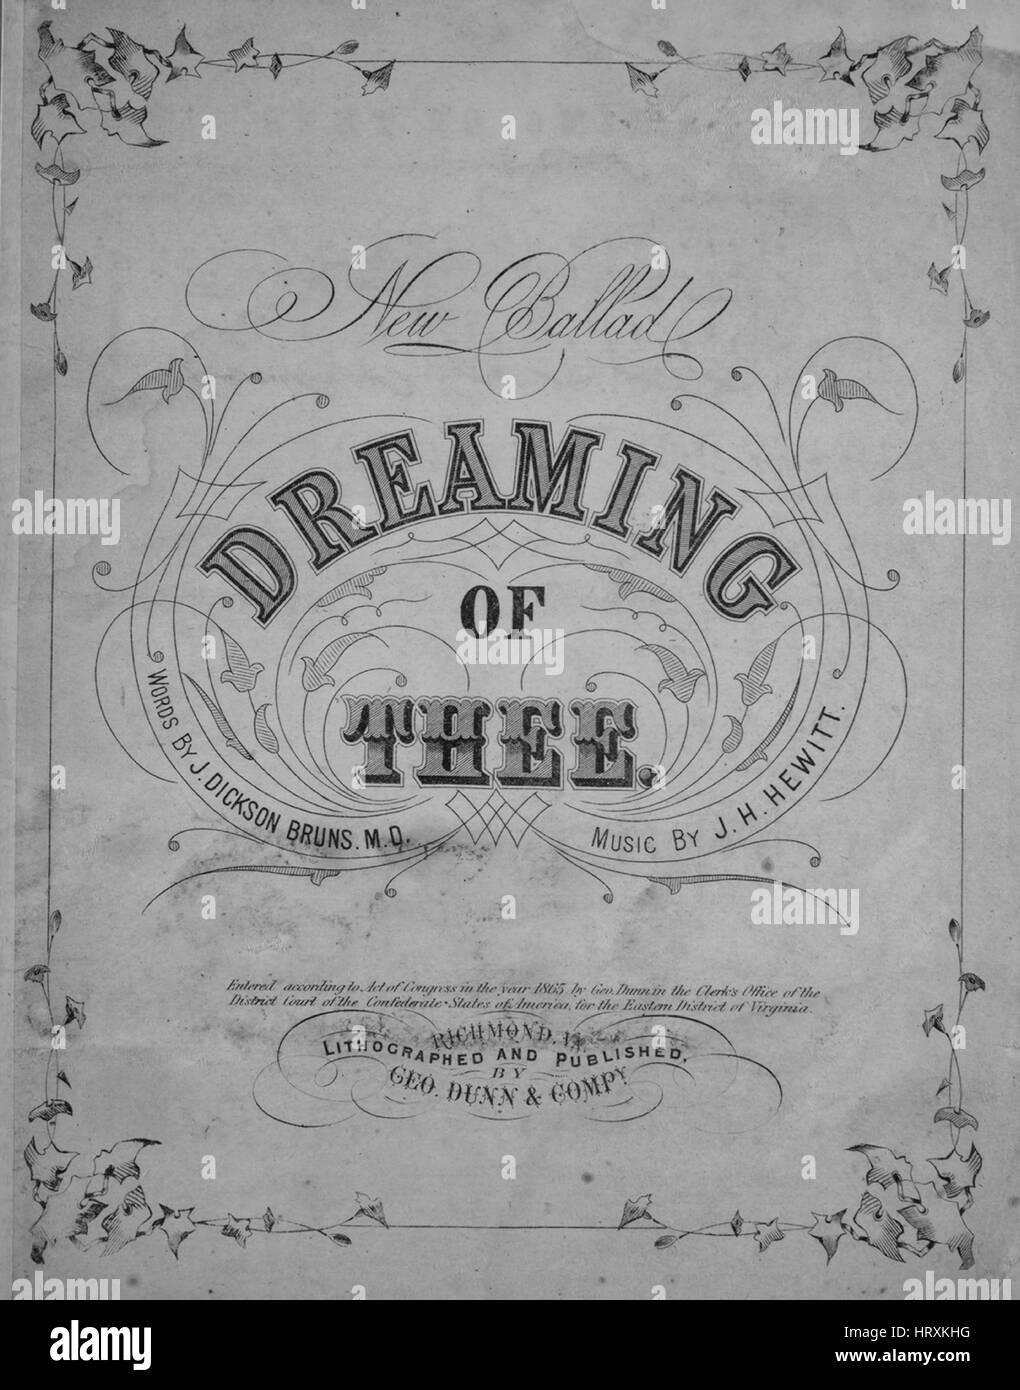 Imagen de cubierta de partituras de la canción 'Descariado de ti New  Ballad", con notas de autoría original leyendo 'palabras por J Dickson  Bruns, MD Music por JH Hewitt", 1865. El editor